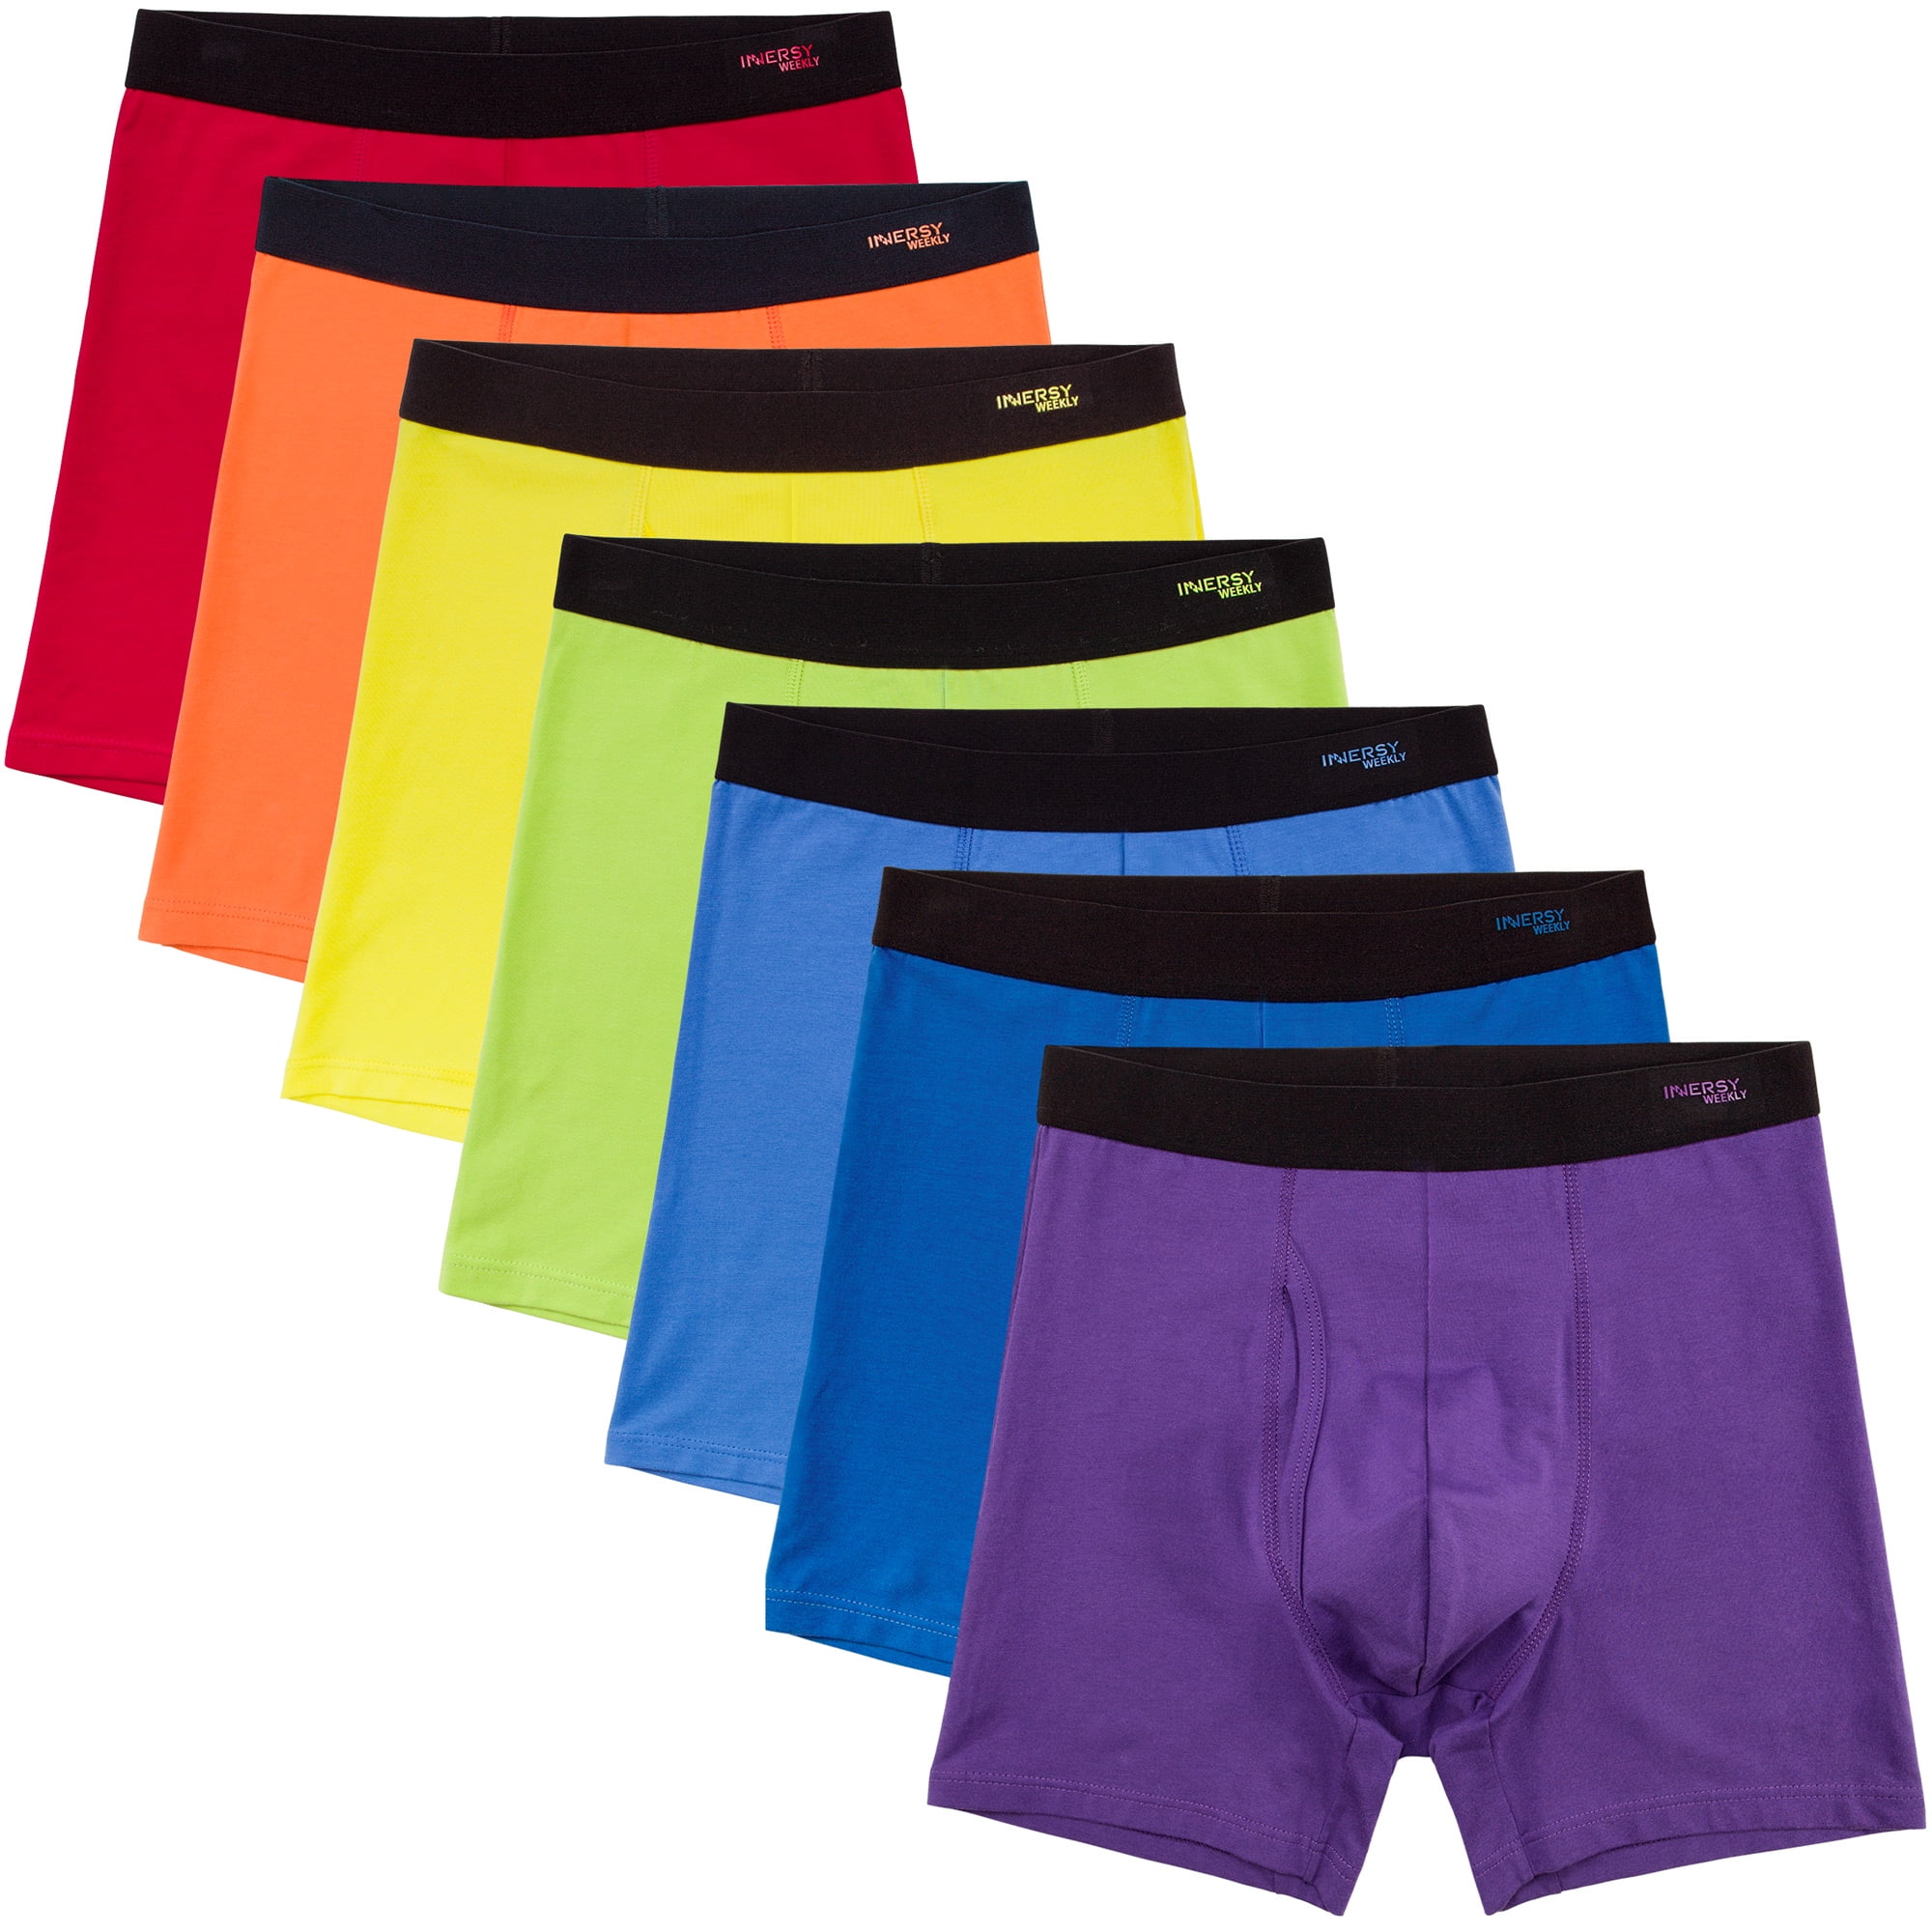 6-pack M 32-34" Stretchable Cotton Mens Briefs Soft Bulge Pouch Underpants Solid 